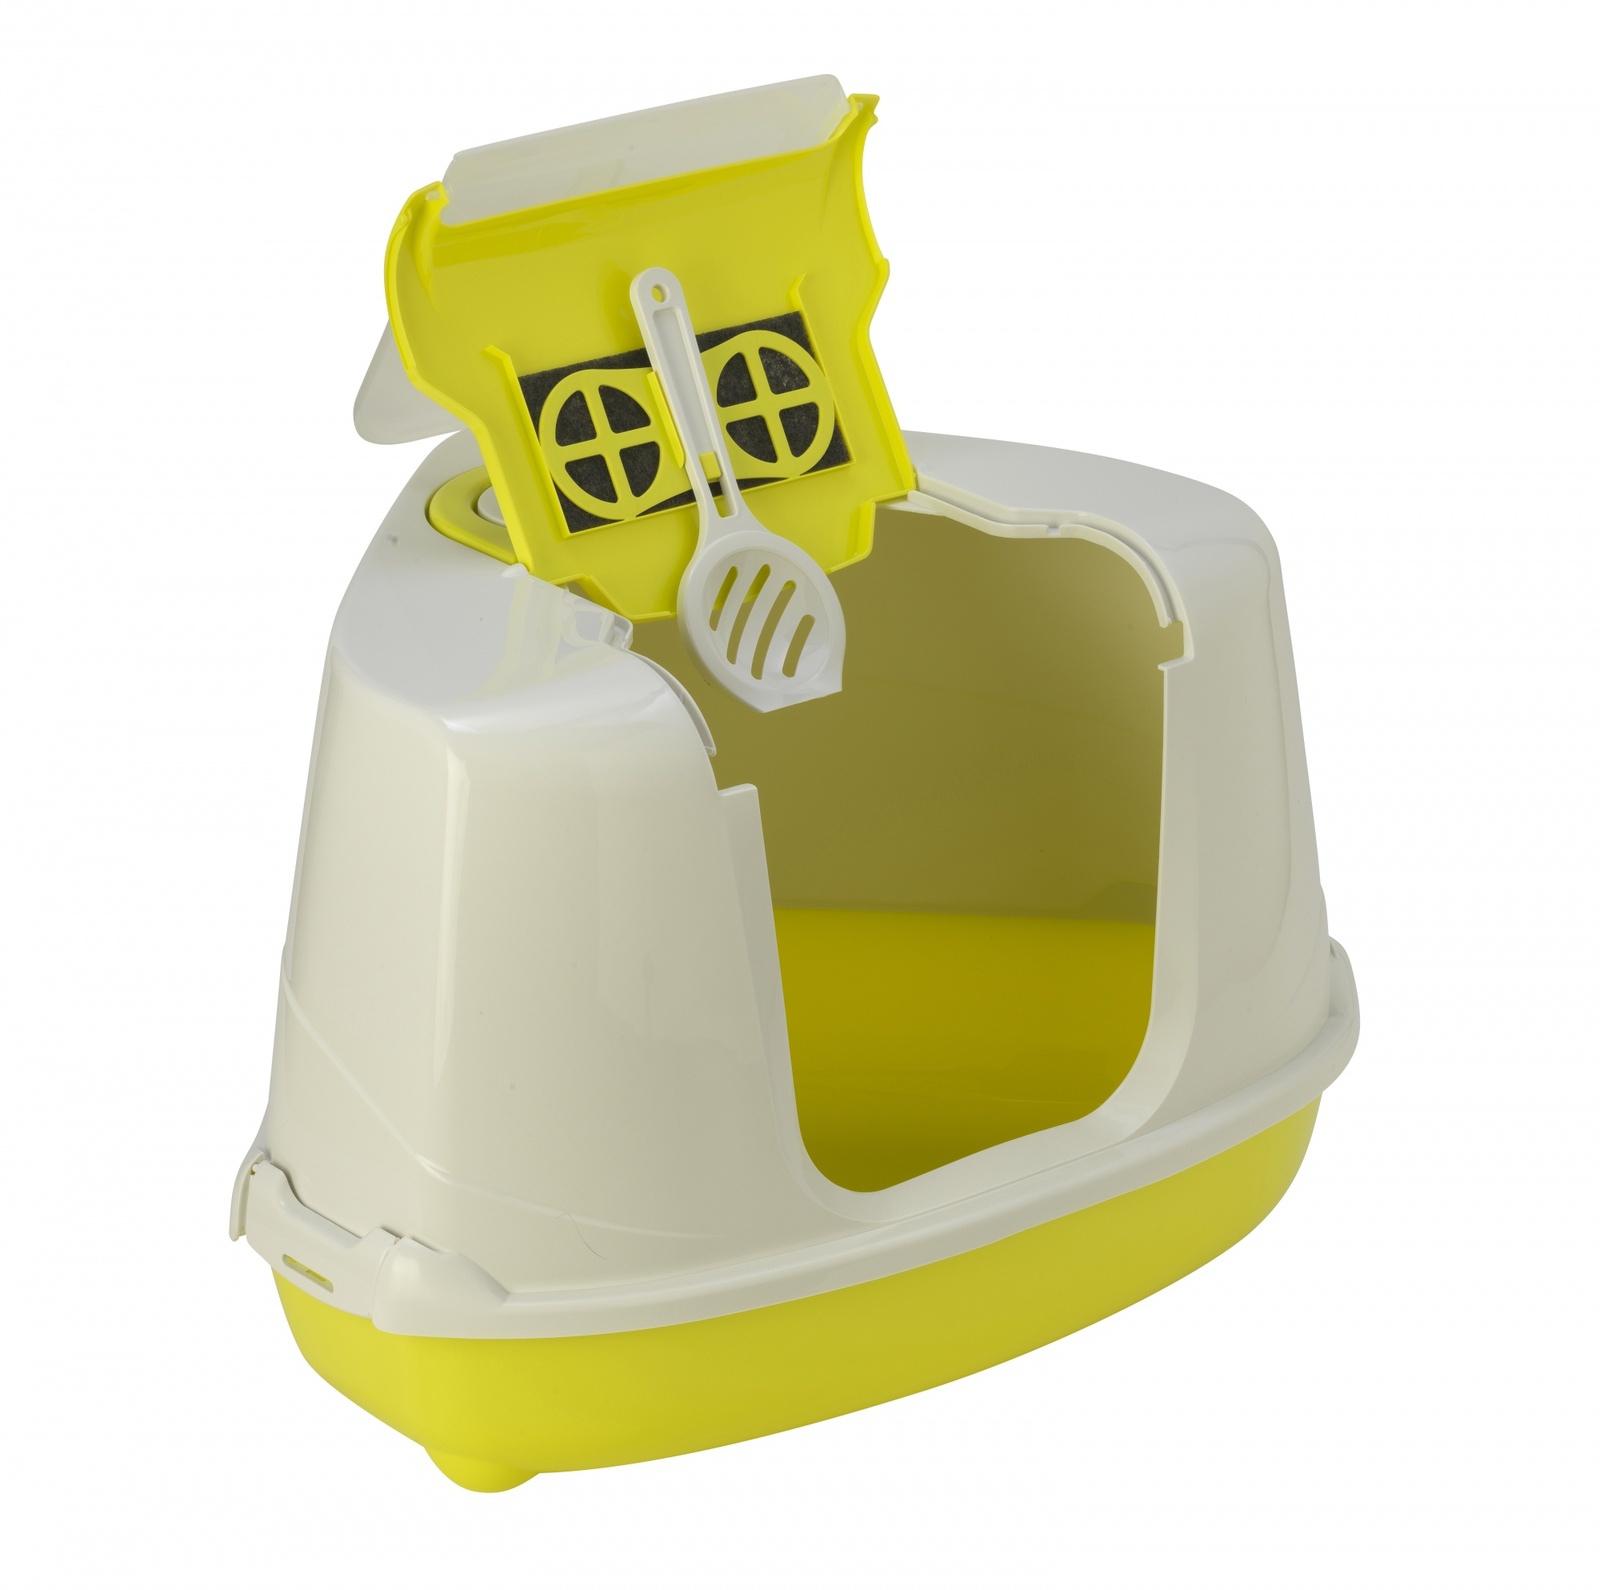 Moderna Moderna туалет-домик угловой Flip с угольным фильтром, 56X44X36 см, лимонно-желтый (1,6 кг)